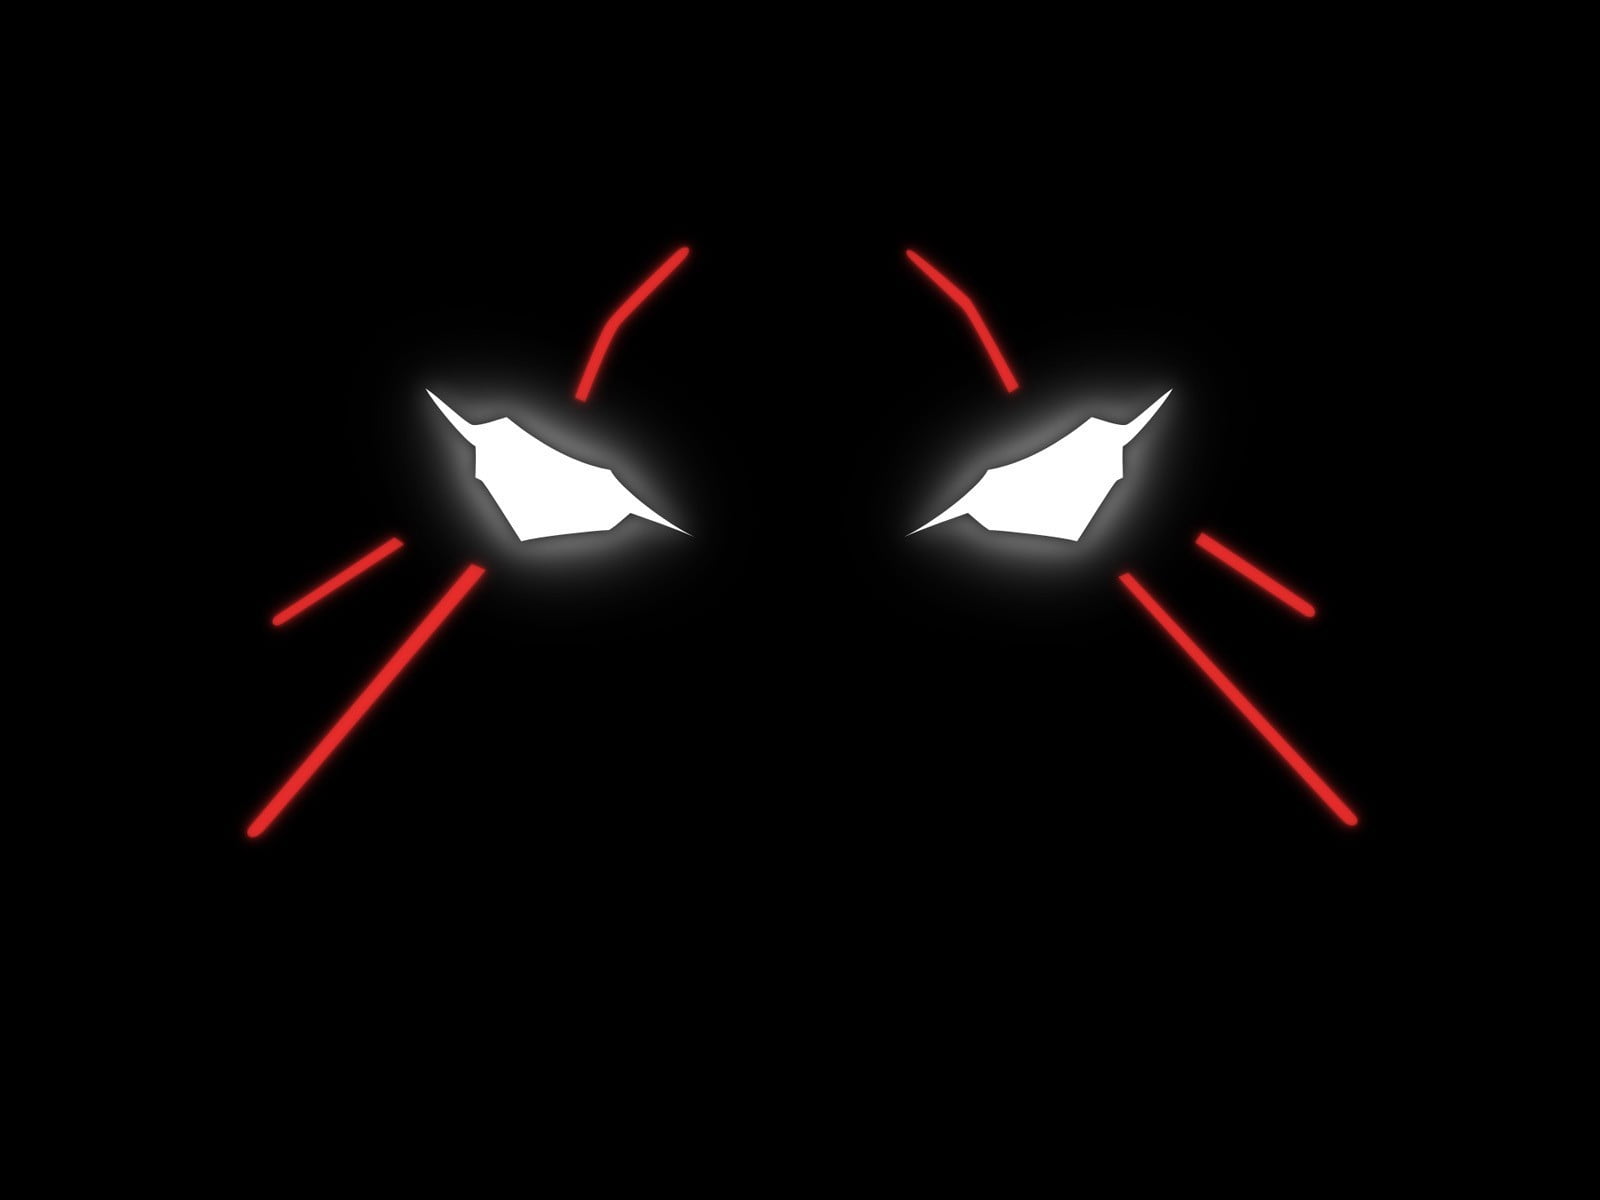 Neon Genesis Evangelion, EVA Unit 01, minimalism, glowing eyes